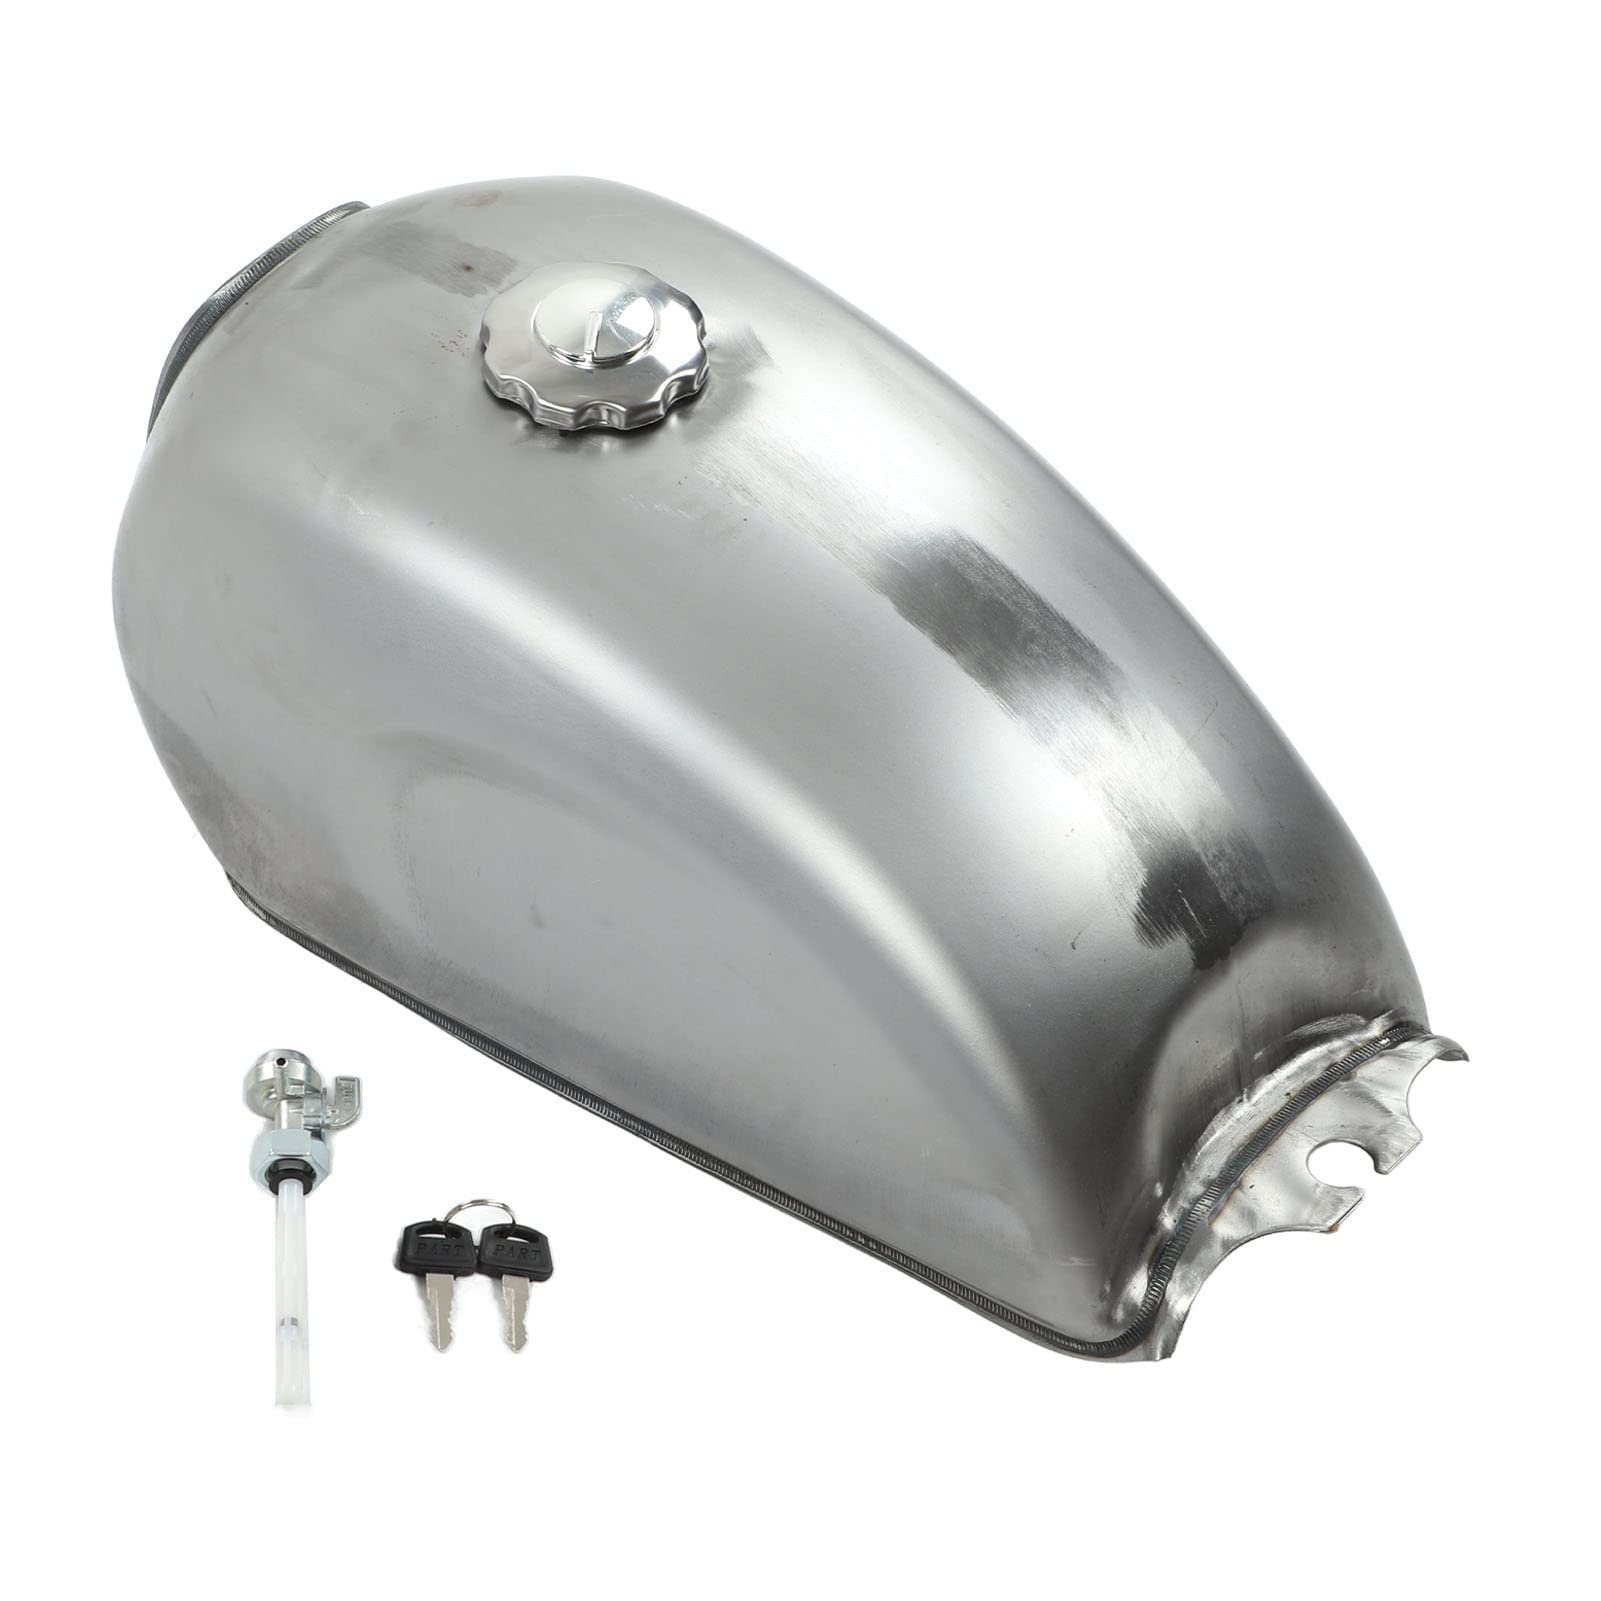 KIMISS Fuel Gas Tank Cap Lock Cover mit Schlüsseln, Motorrad Tank mit Cap Kit 9L/2.4Gal Vintage Ersatz für CFmoto 2013 Bis 2018 von KIMISS